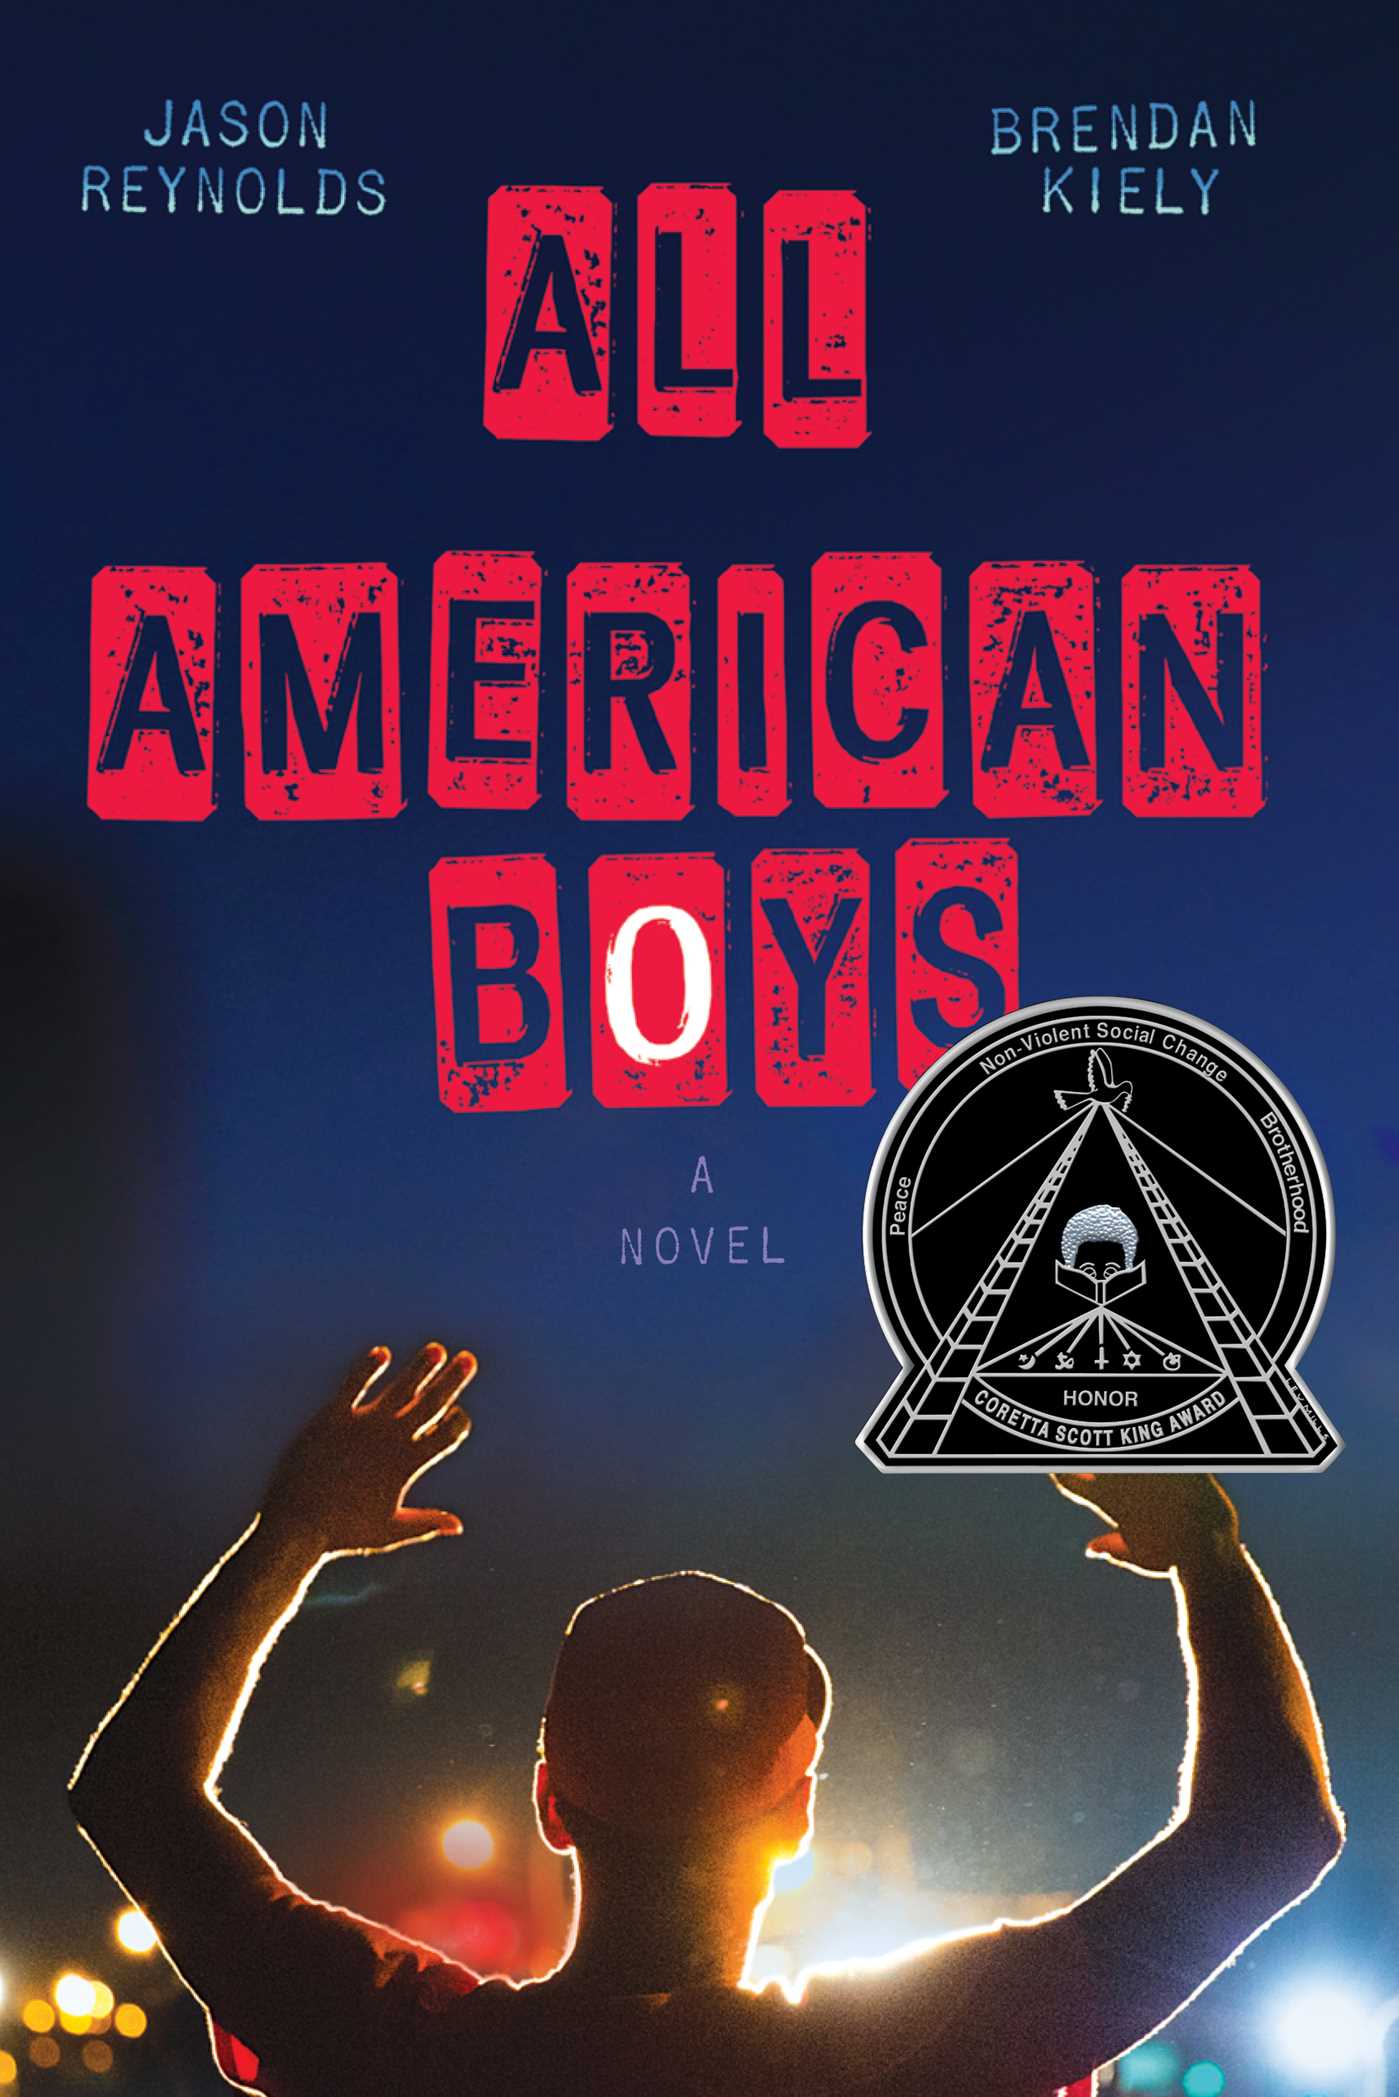 All+American+Boys